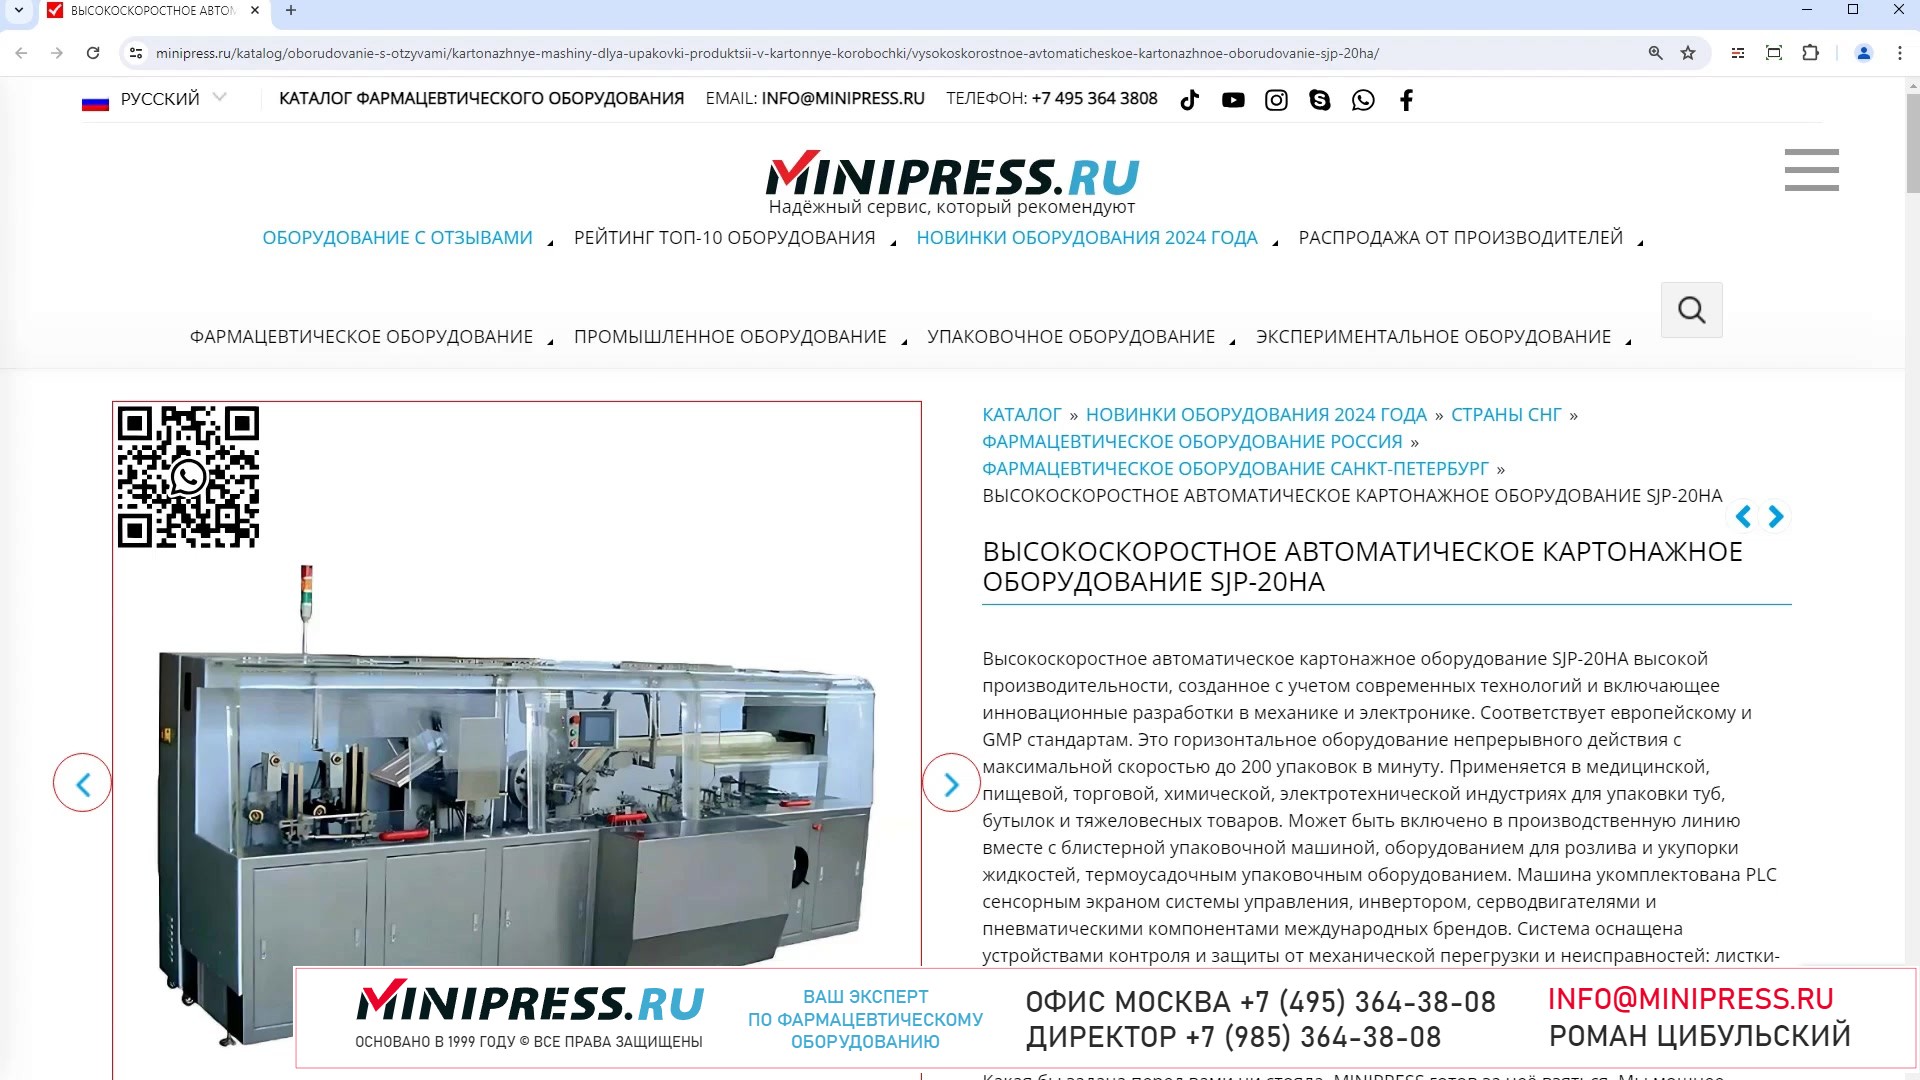 Minipress.ru Высокоскоростное автоматическое картонажное оборудование SJP-20HA